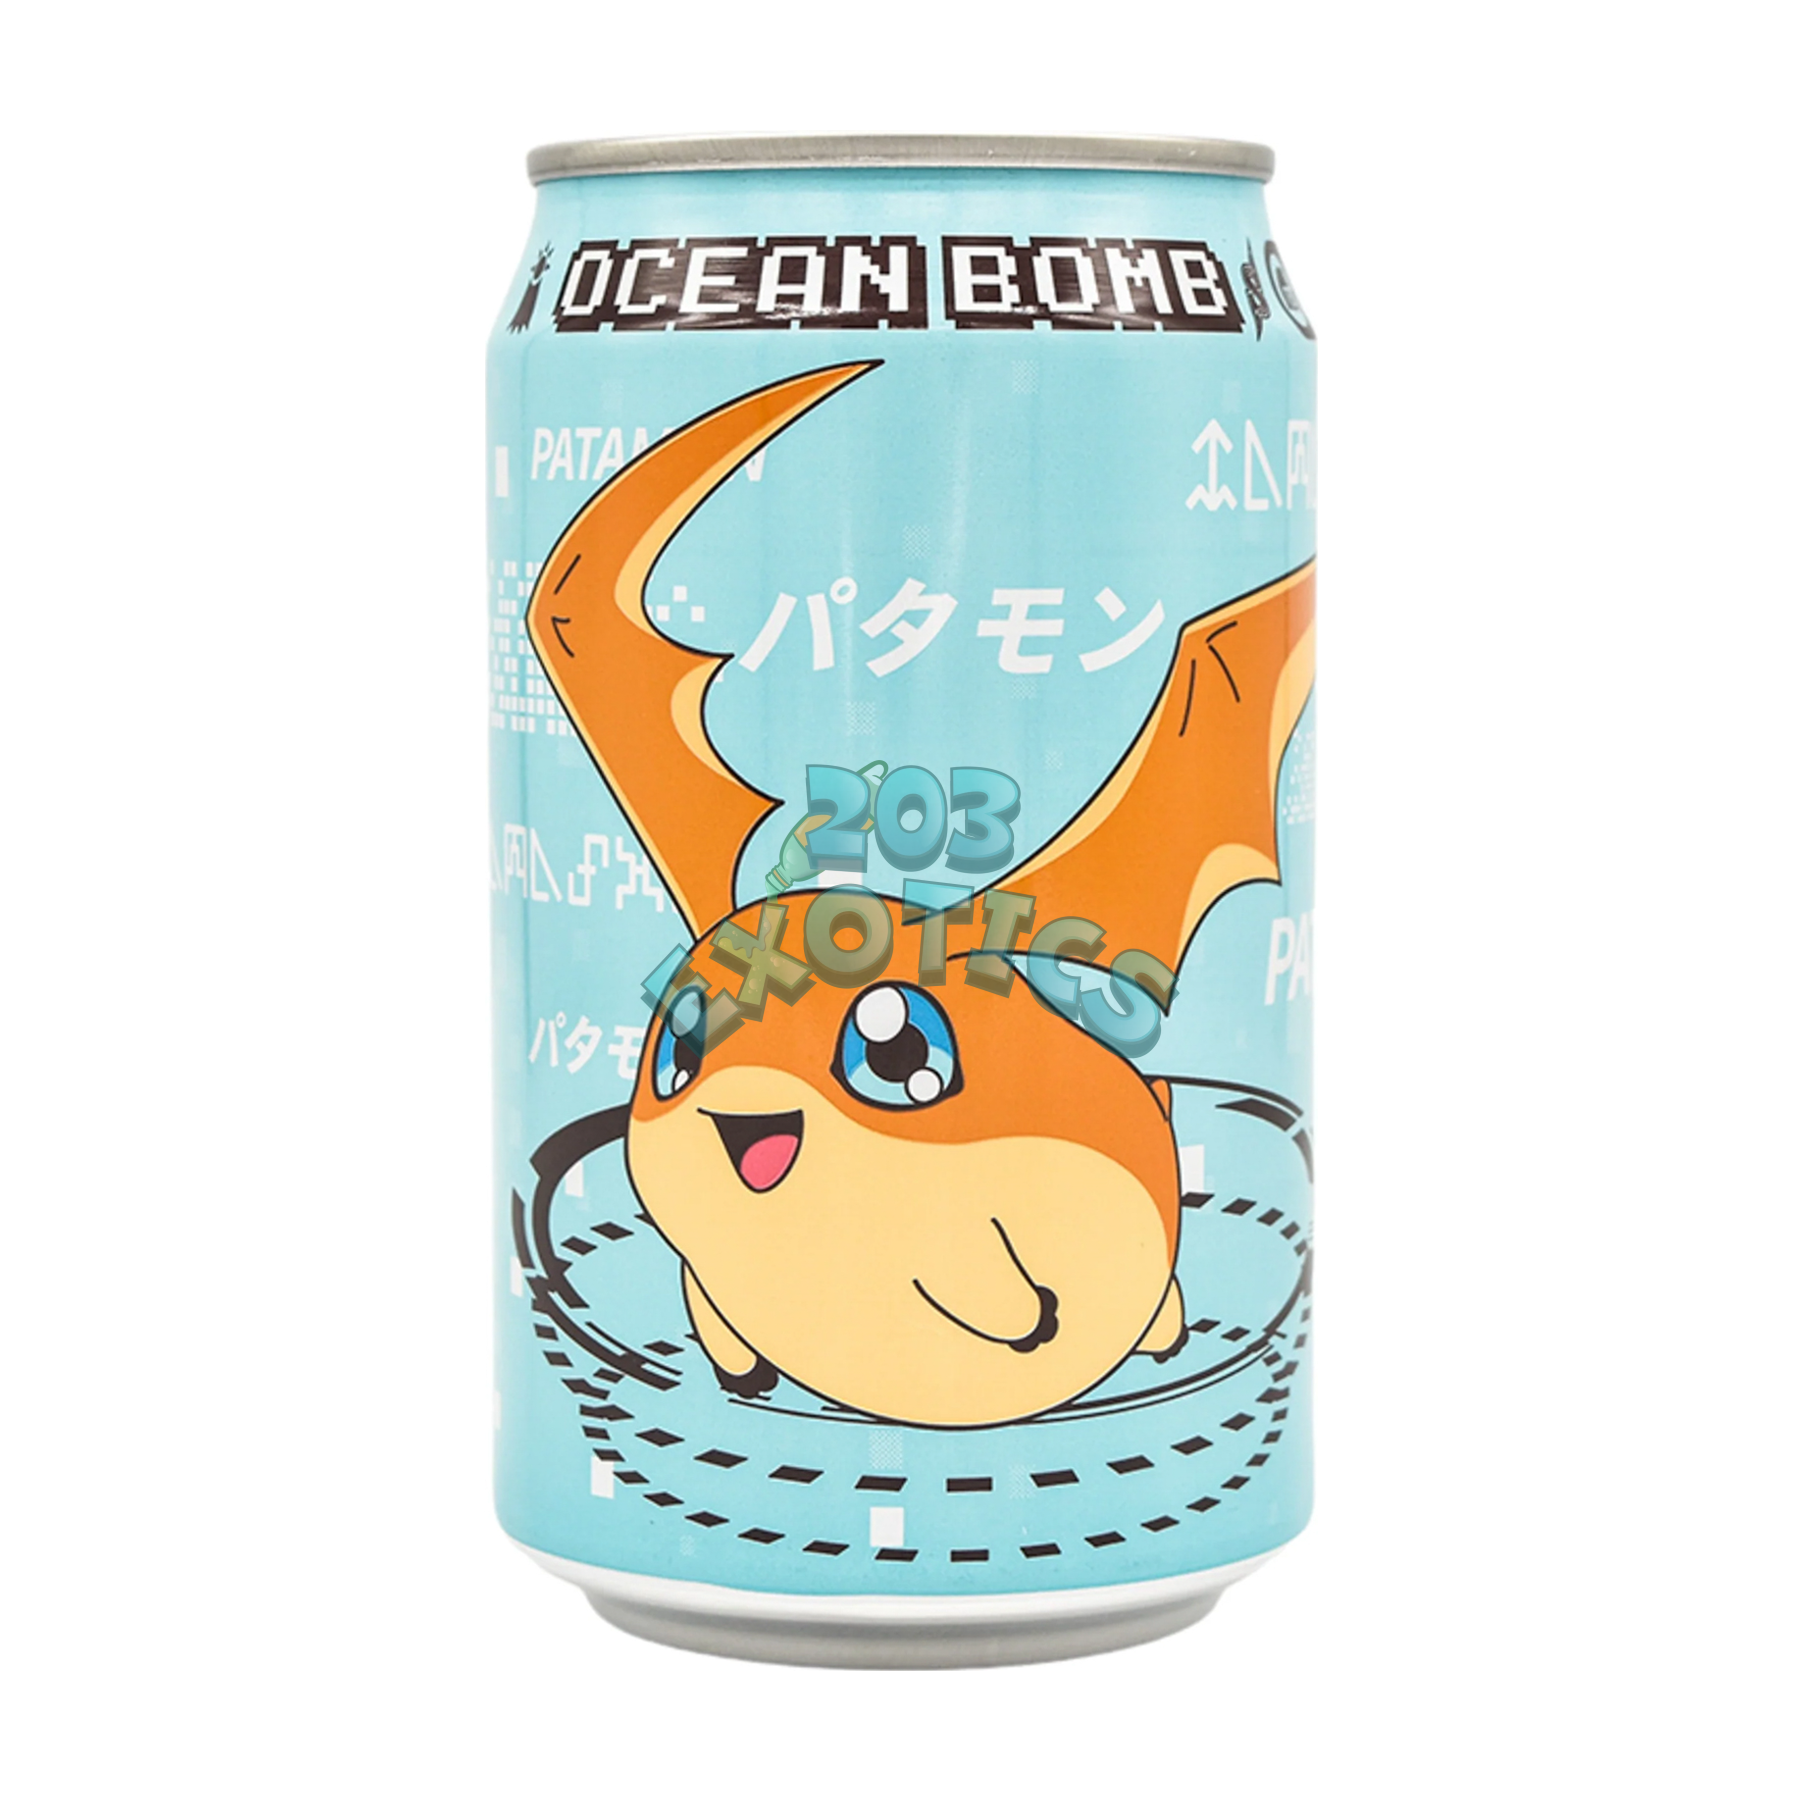 Ocean Bomb Digimon Patamon Lemon Flavored Sparkling Water (330Ml) Soda